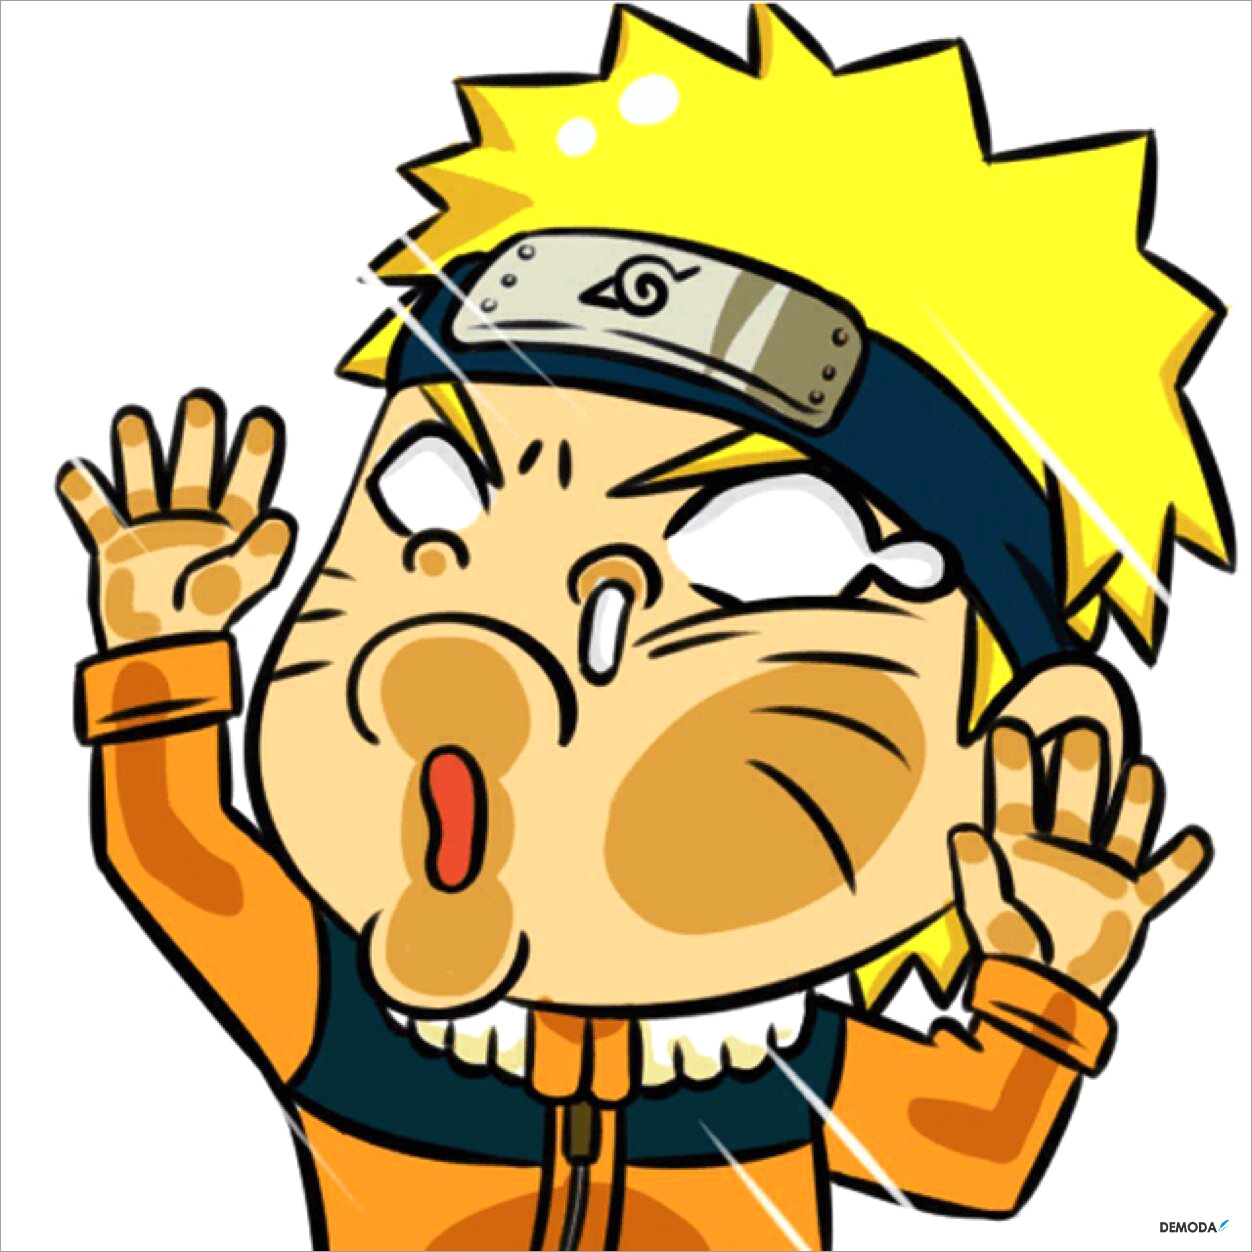 Naruto chế hài hước: Cười nghiêng ngả với những bức ảnh chế Naruto vô cùng hài hước và độc đáo. Tình huống thú vị, những câu thoại hài hước sẽ khiến bạn không thể nhịn cười. Cùng xem và thưởng thức những khía cạnh mới lạ của chàng ninja này.